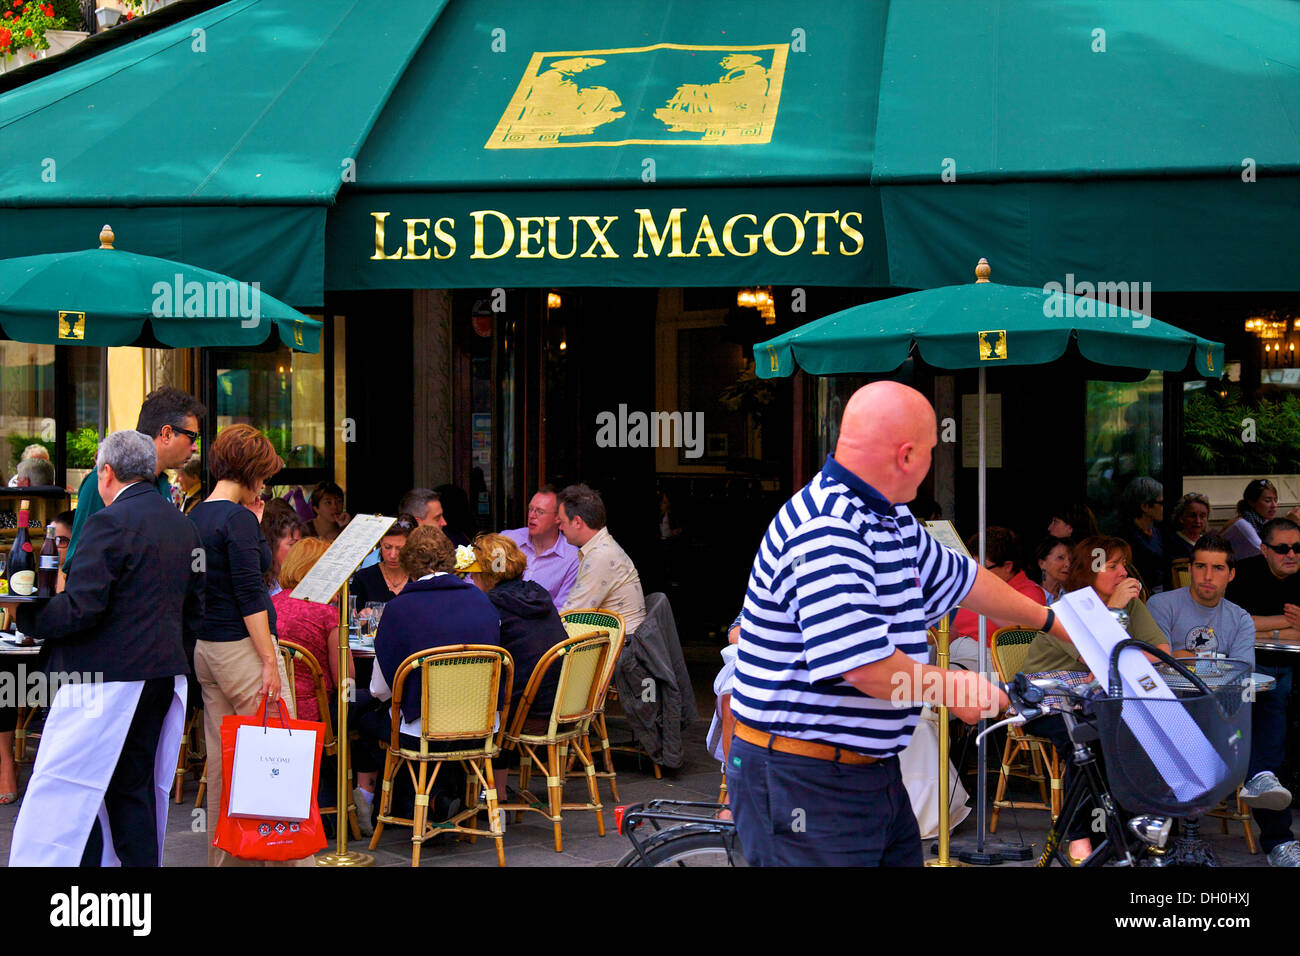 Les Deux Magots Restaurant, Paris, France Stock Photo